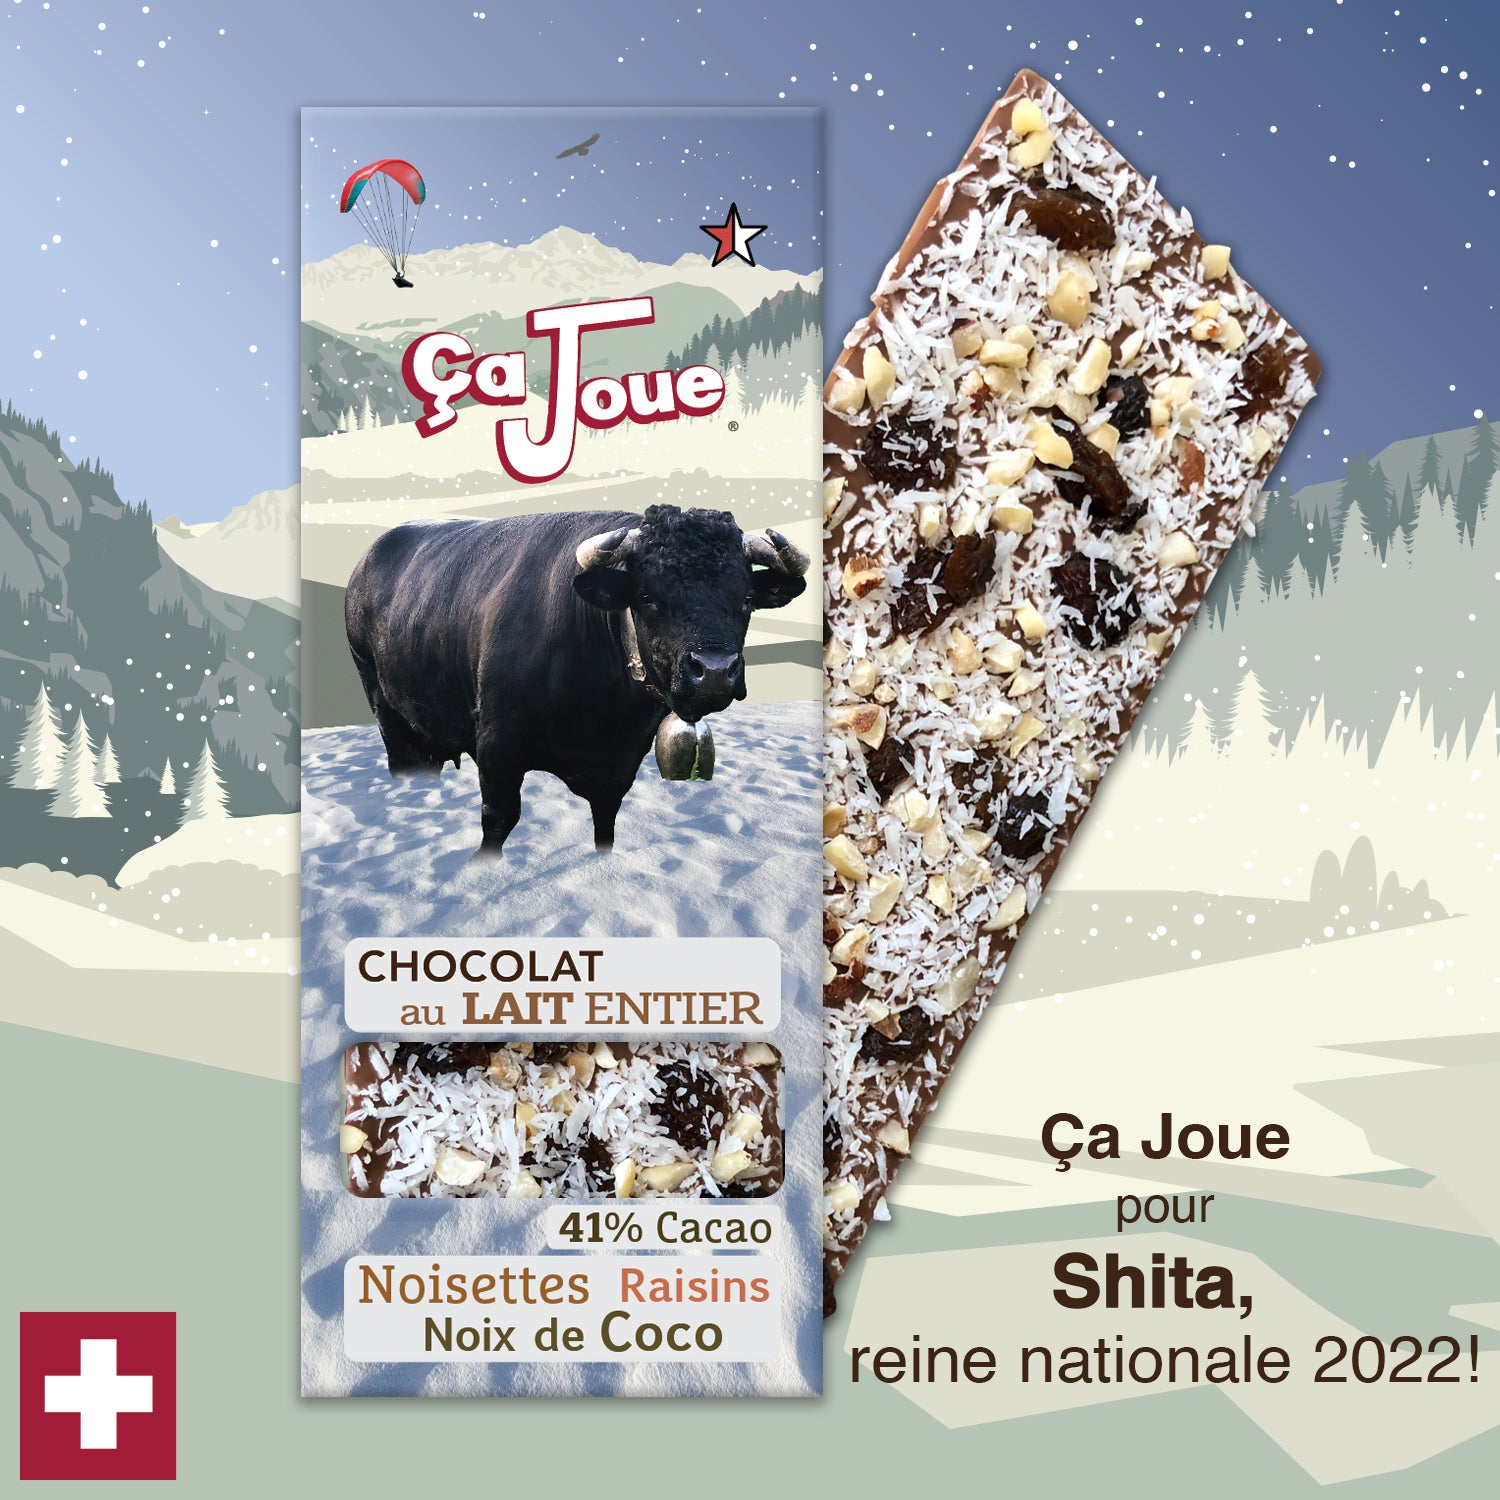 Ça Joue für die Königin Shita (Ref-BL5) Milchschokolade aus Val de Bagnes